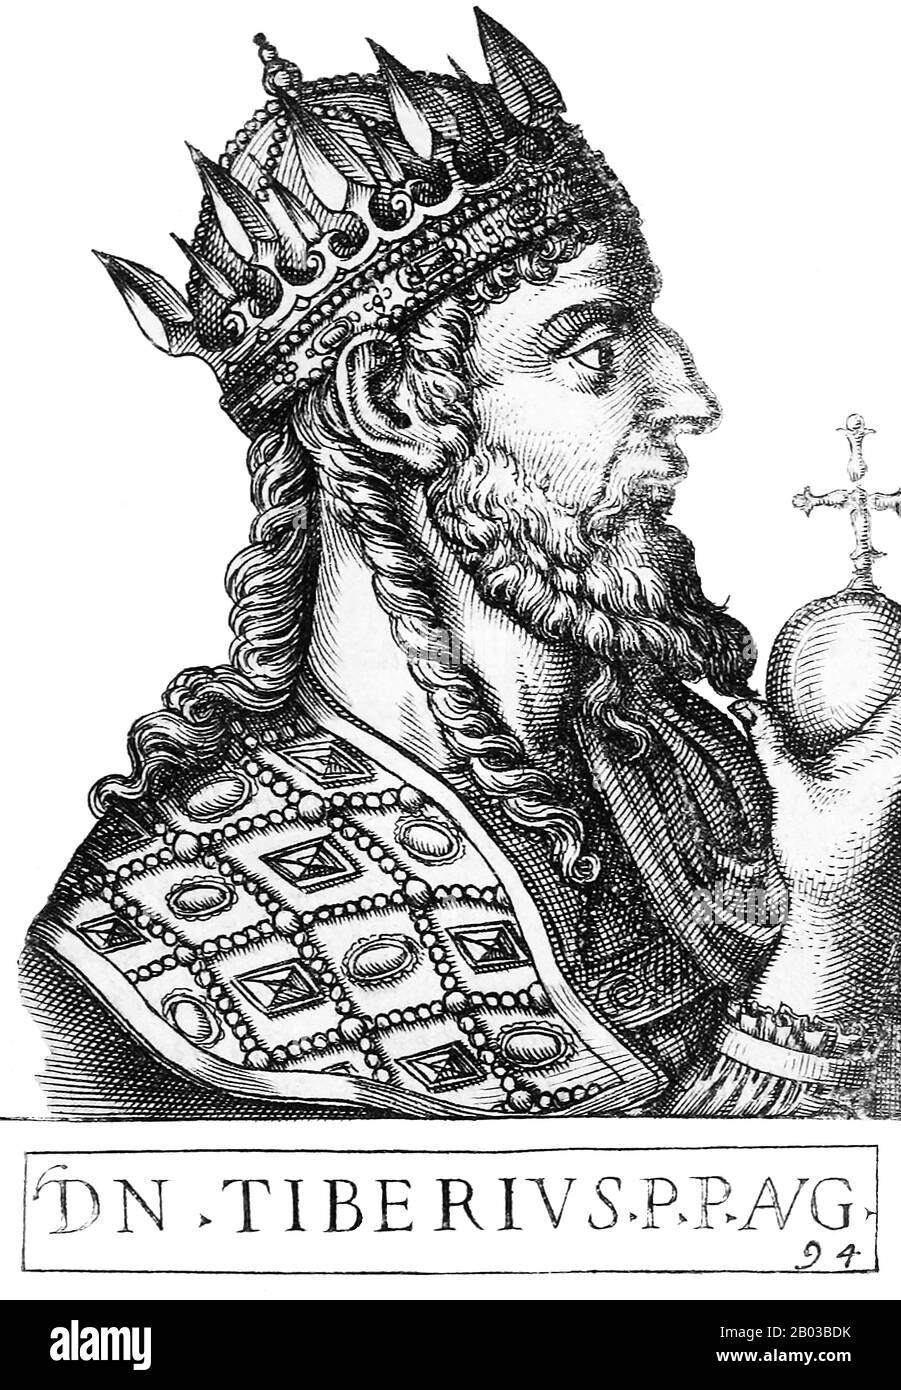 Tiberio II Constantino (520-582) nació en Tracia y fue un amigo cercano del futuro emperador Justin II Tiberio se convirtió en comandante de la guardia imperial de los Excubitos, y cuando Justin II se convirtió en emperador, Tiberio se convirtió en su comandante militar principal. Cuando Justin tuvo un colapso mental, su esposa Sophia se volvió a Tiberio para manejar el imperio, y más tarde fue nombrado co-emperador y adoptado hijo por Justin en 574. Tiberio se convirtió en el único emperador después de que Justin muriera en 578. Foto de stock